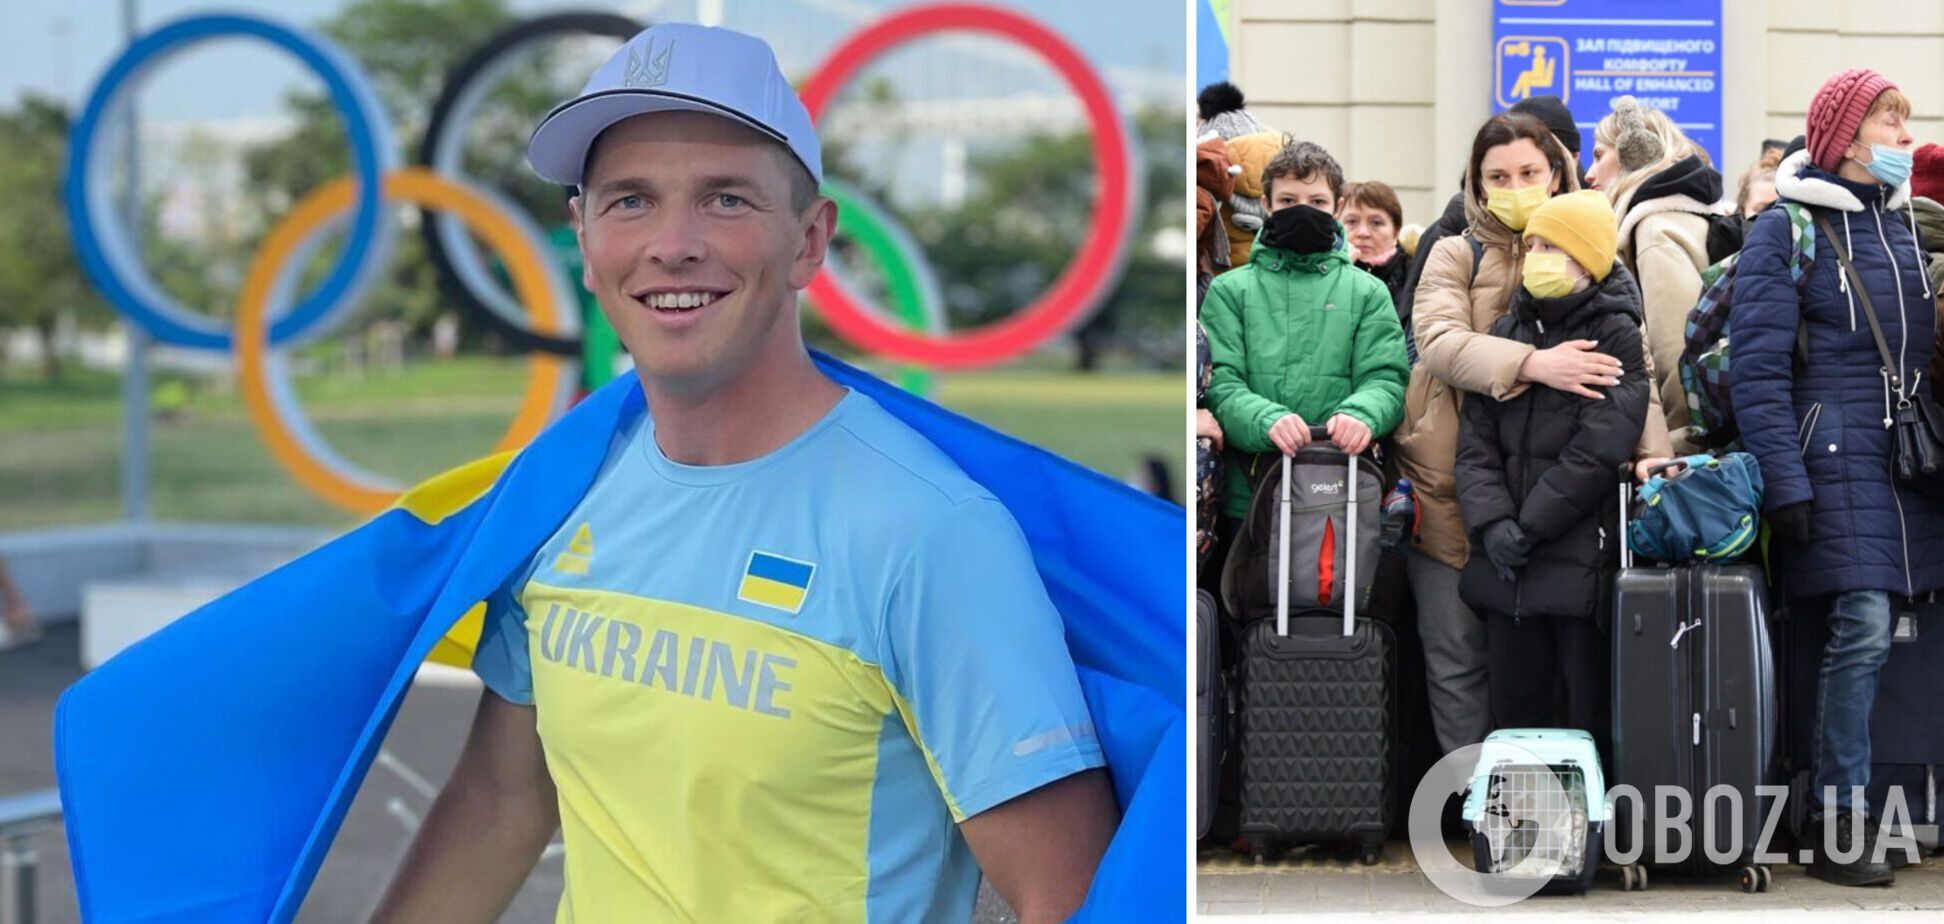 Вывозил украинских детей за границу и гонял пикапы: олимпийский чемпион после первого шока помогал военным и юным гребцам